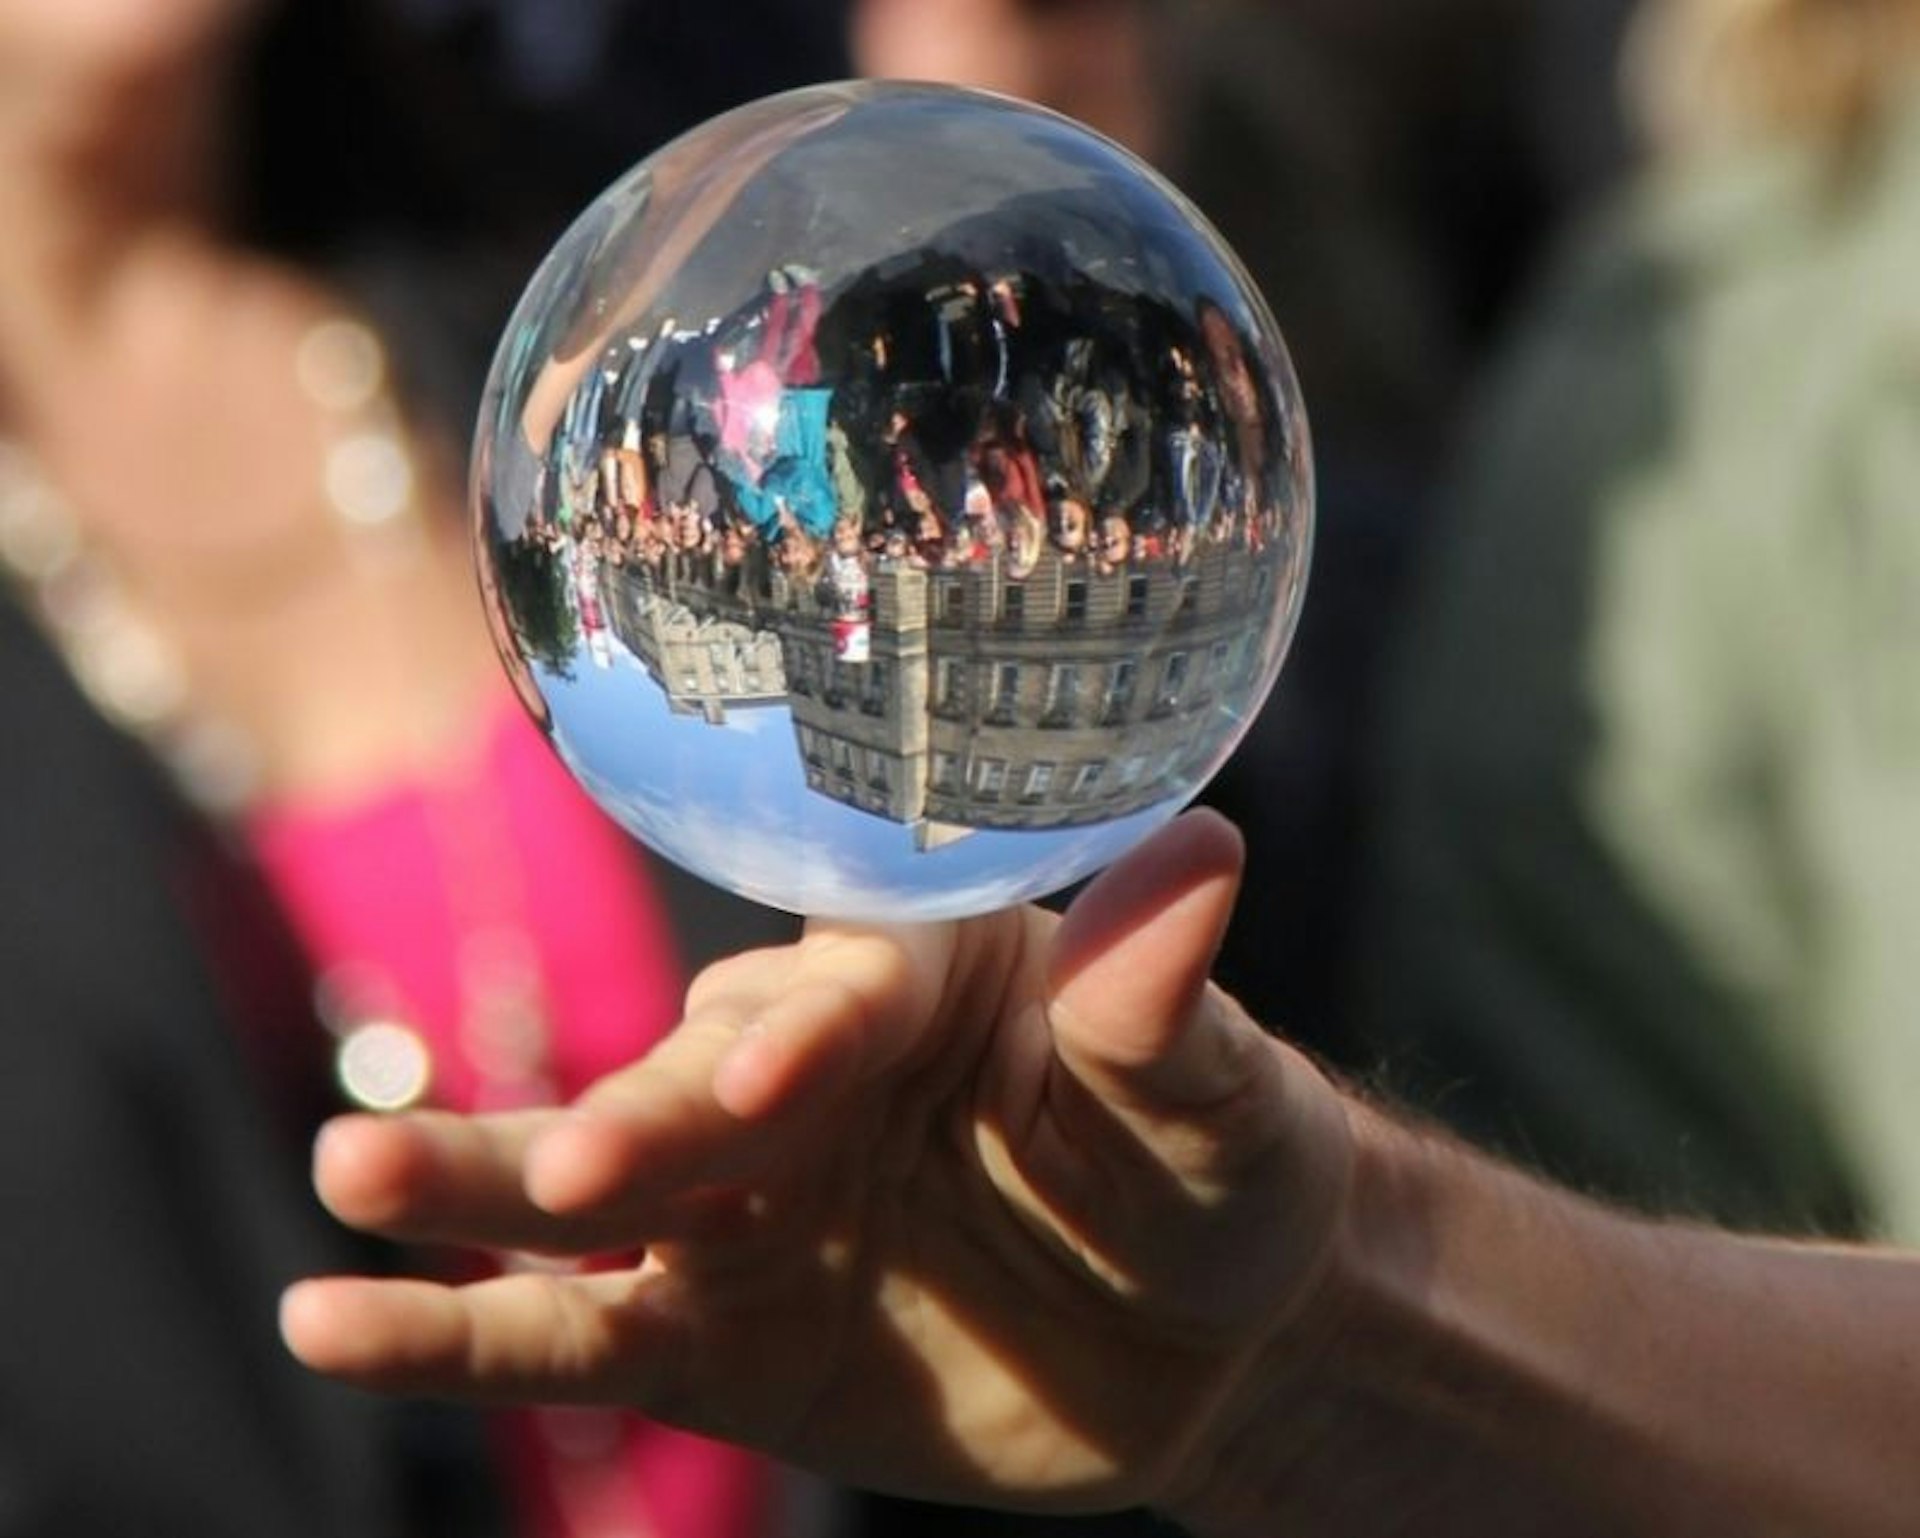 The Edinburgh Fringe, crowd reflecting in a glass globe